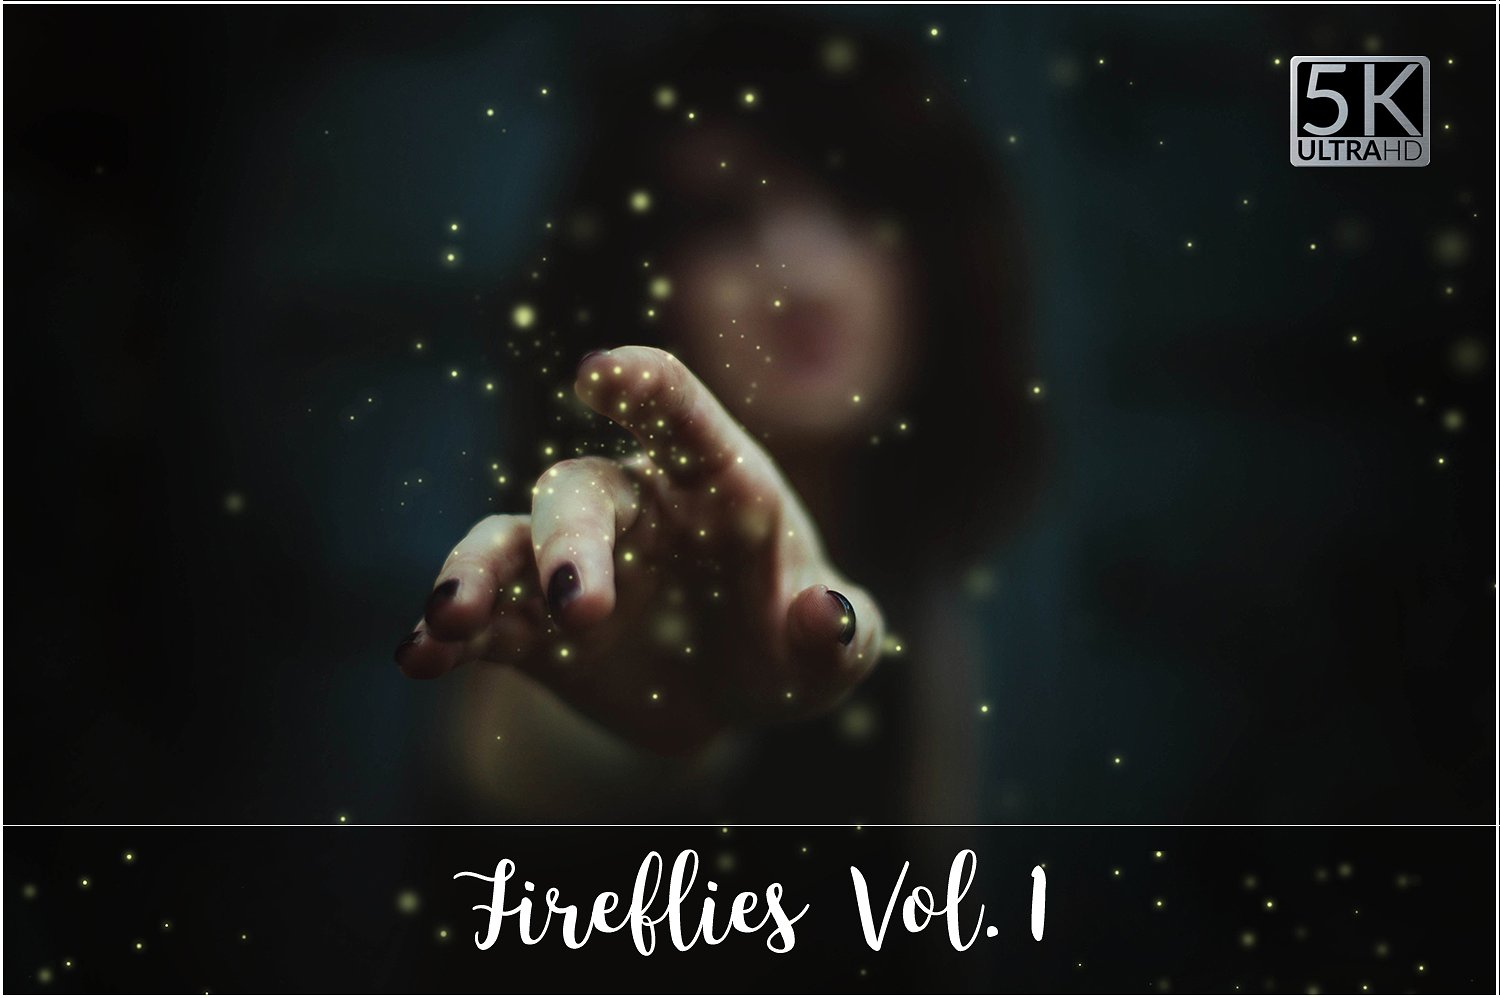 超高像素火花特效叠层背景 5K Fireflies Vol. 1插图